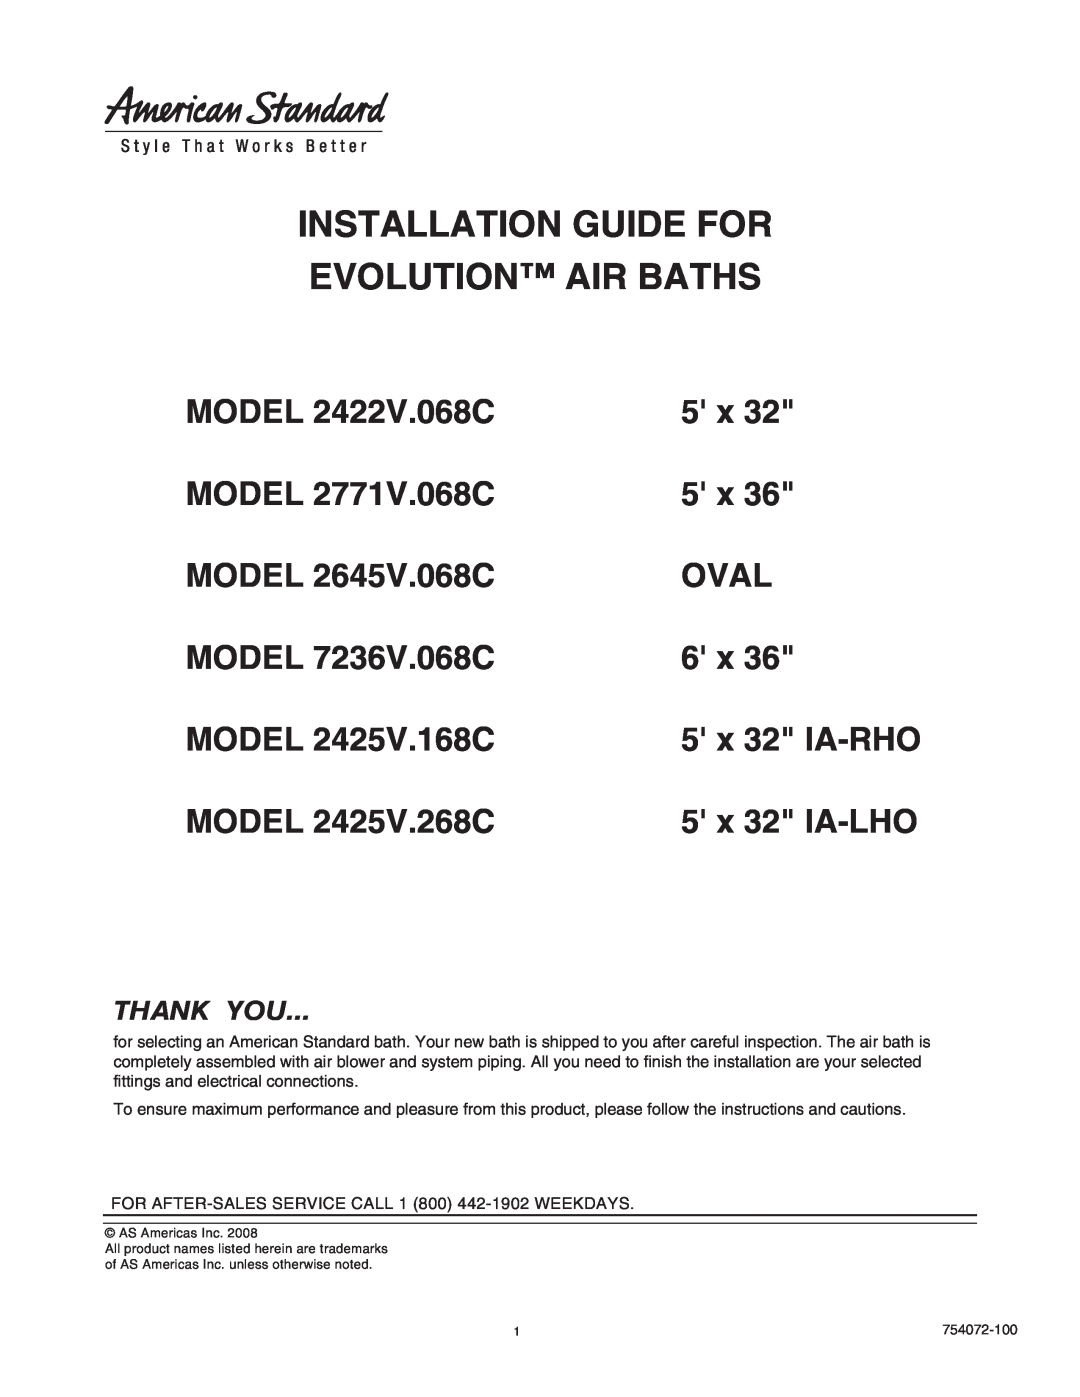 American Standard 2425V.268C, 2422V.068C, 2425V.168C, 2771V.068C manual Installation Guide For Evolution Air Baths 